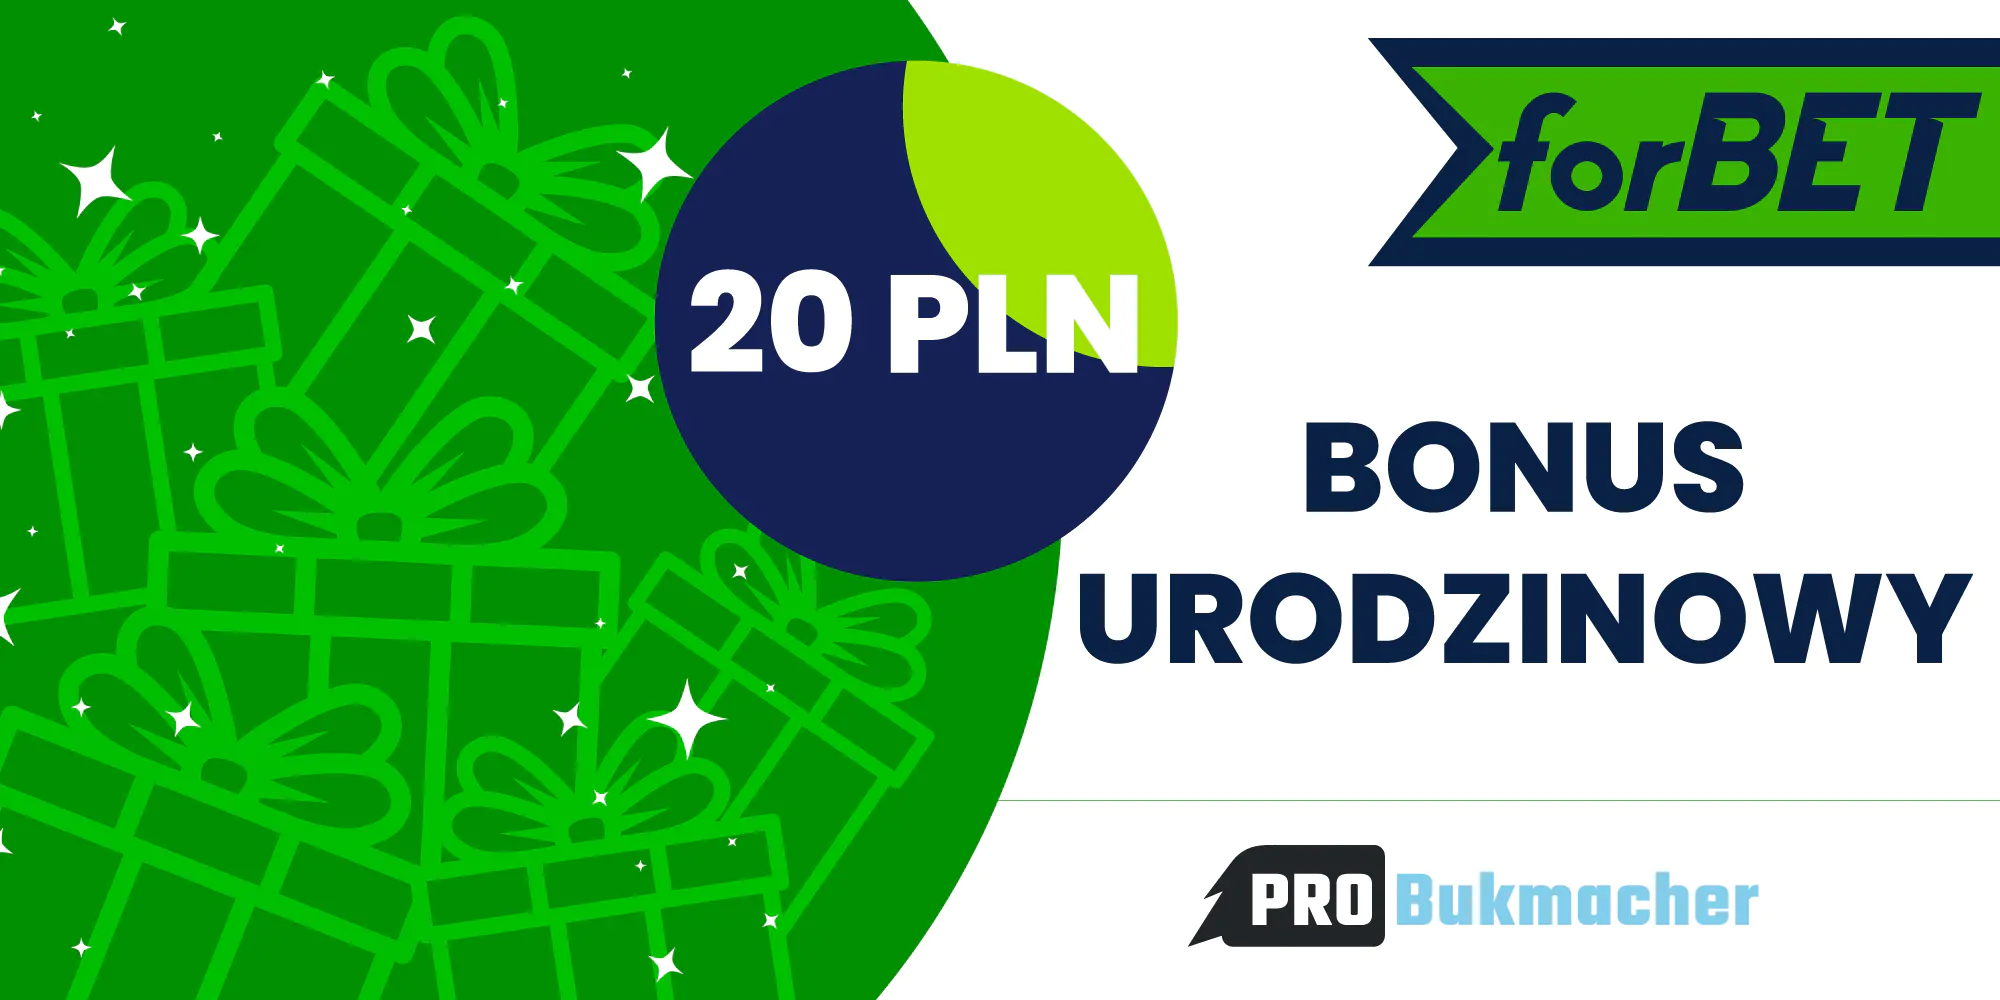 Bonus bukmacherski urodzinowy 20 PLN w Forbet